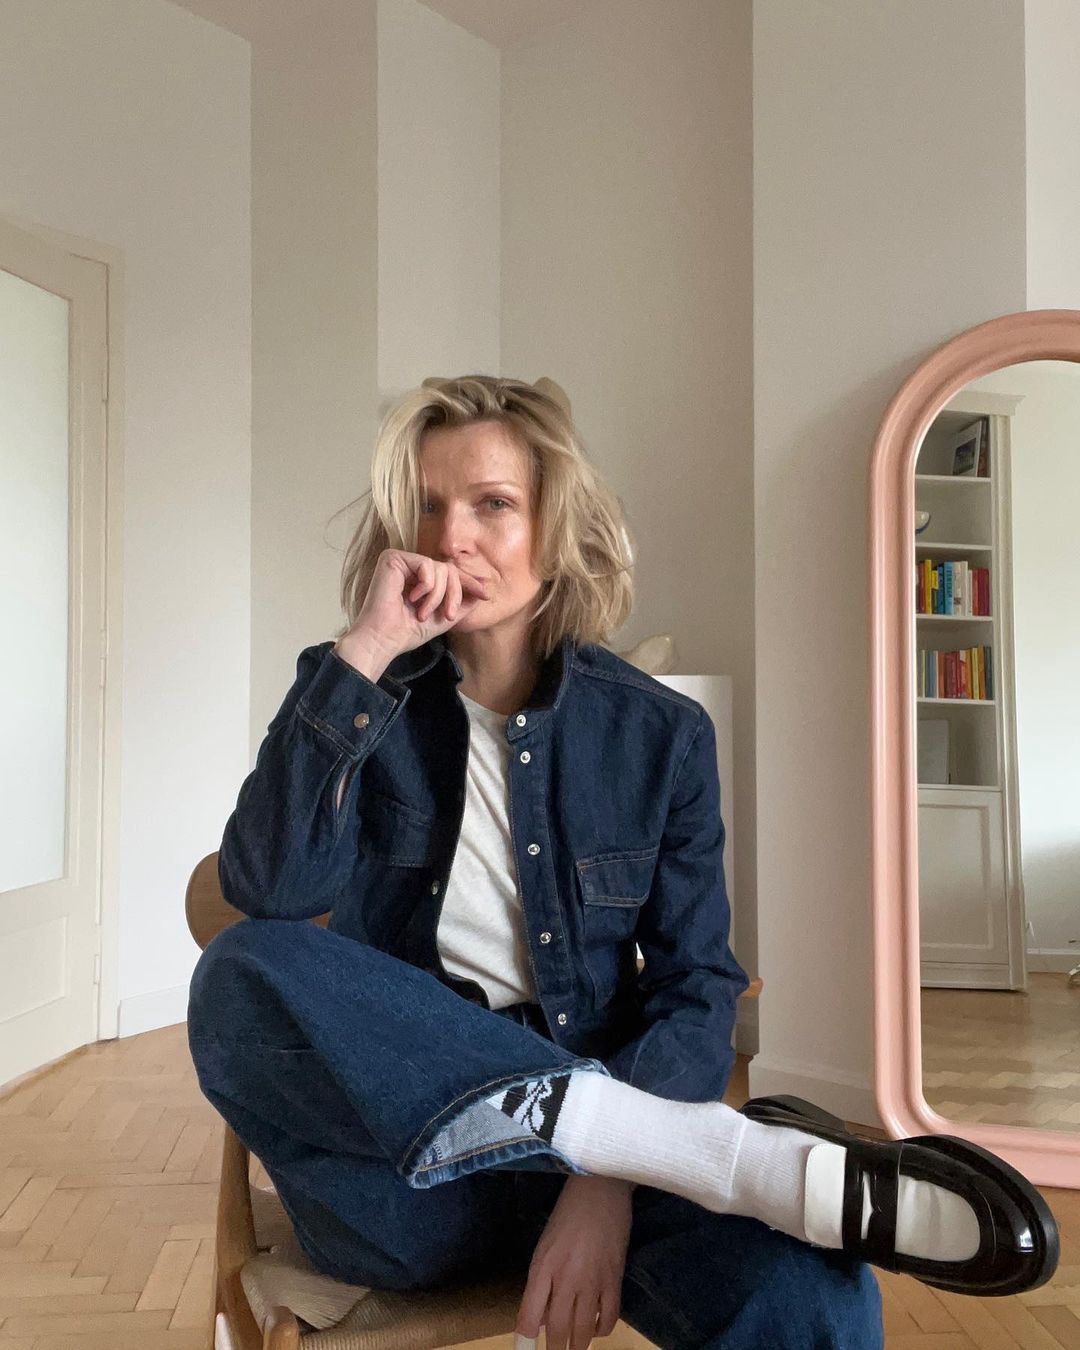 Magda Mołek w jeansowej stylizacji z mokasynami
Instagram/magda_molek